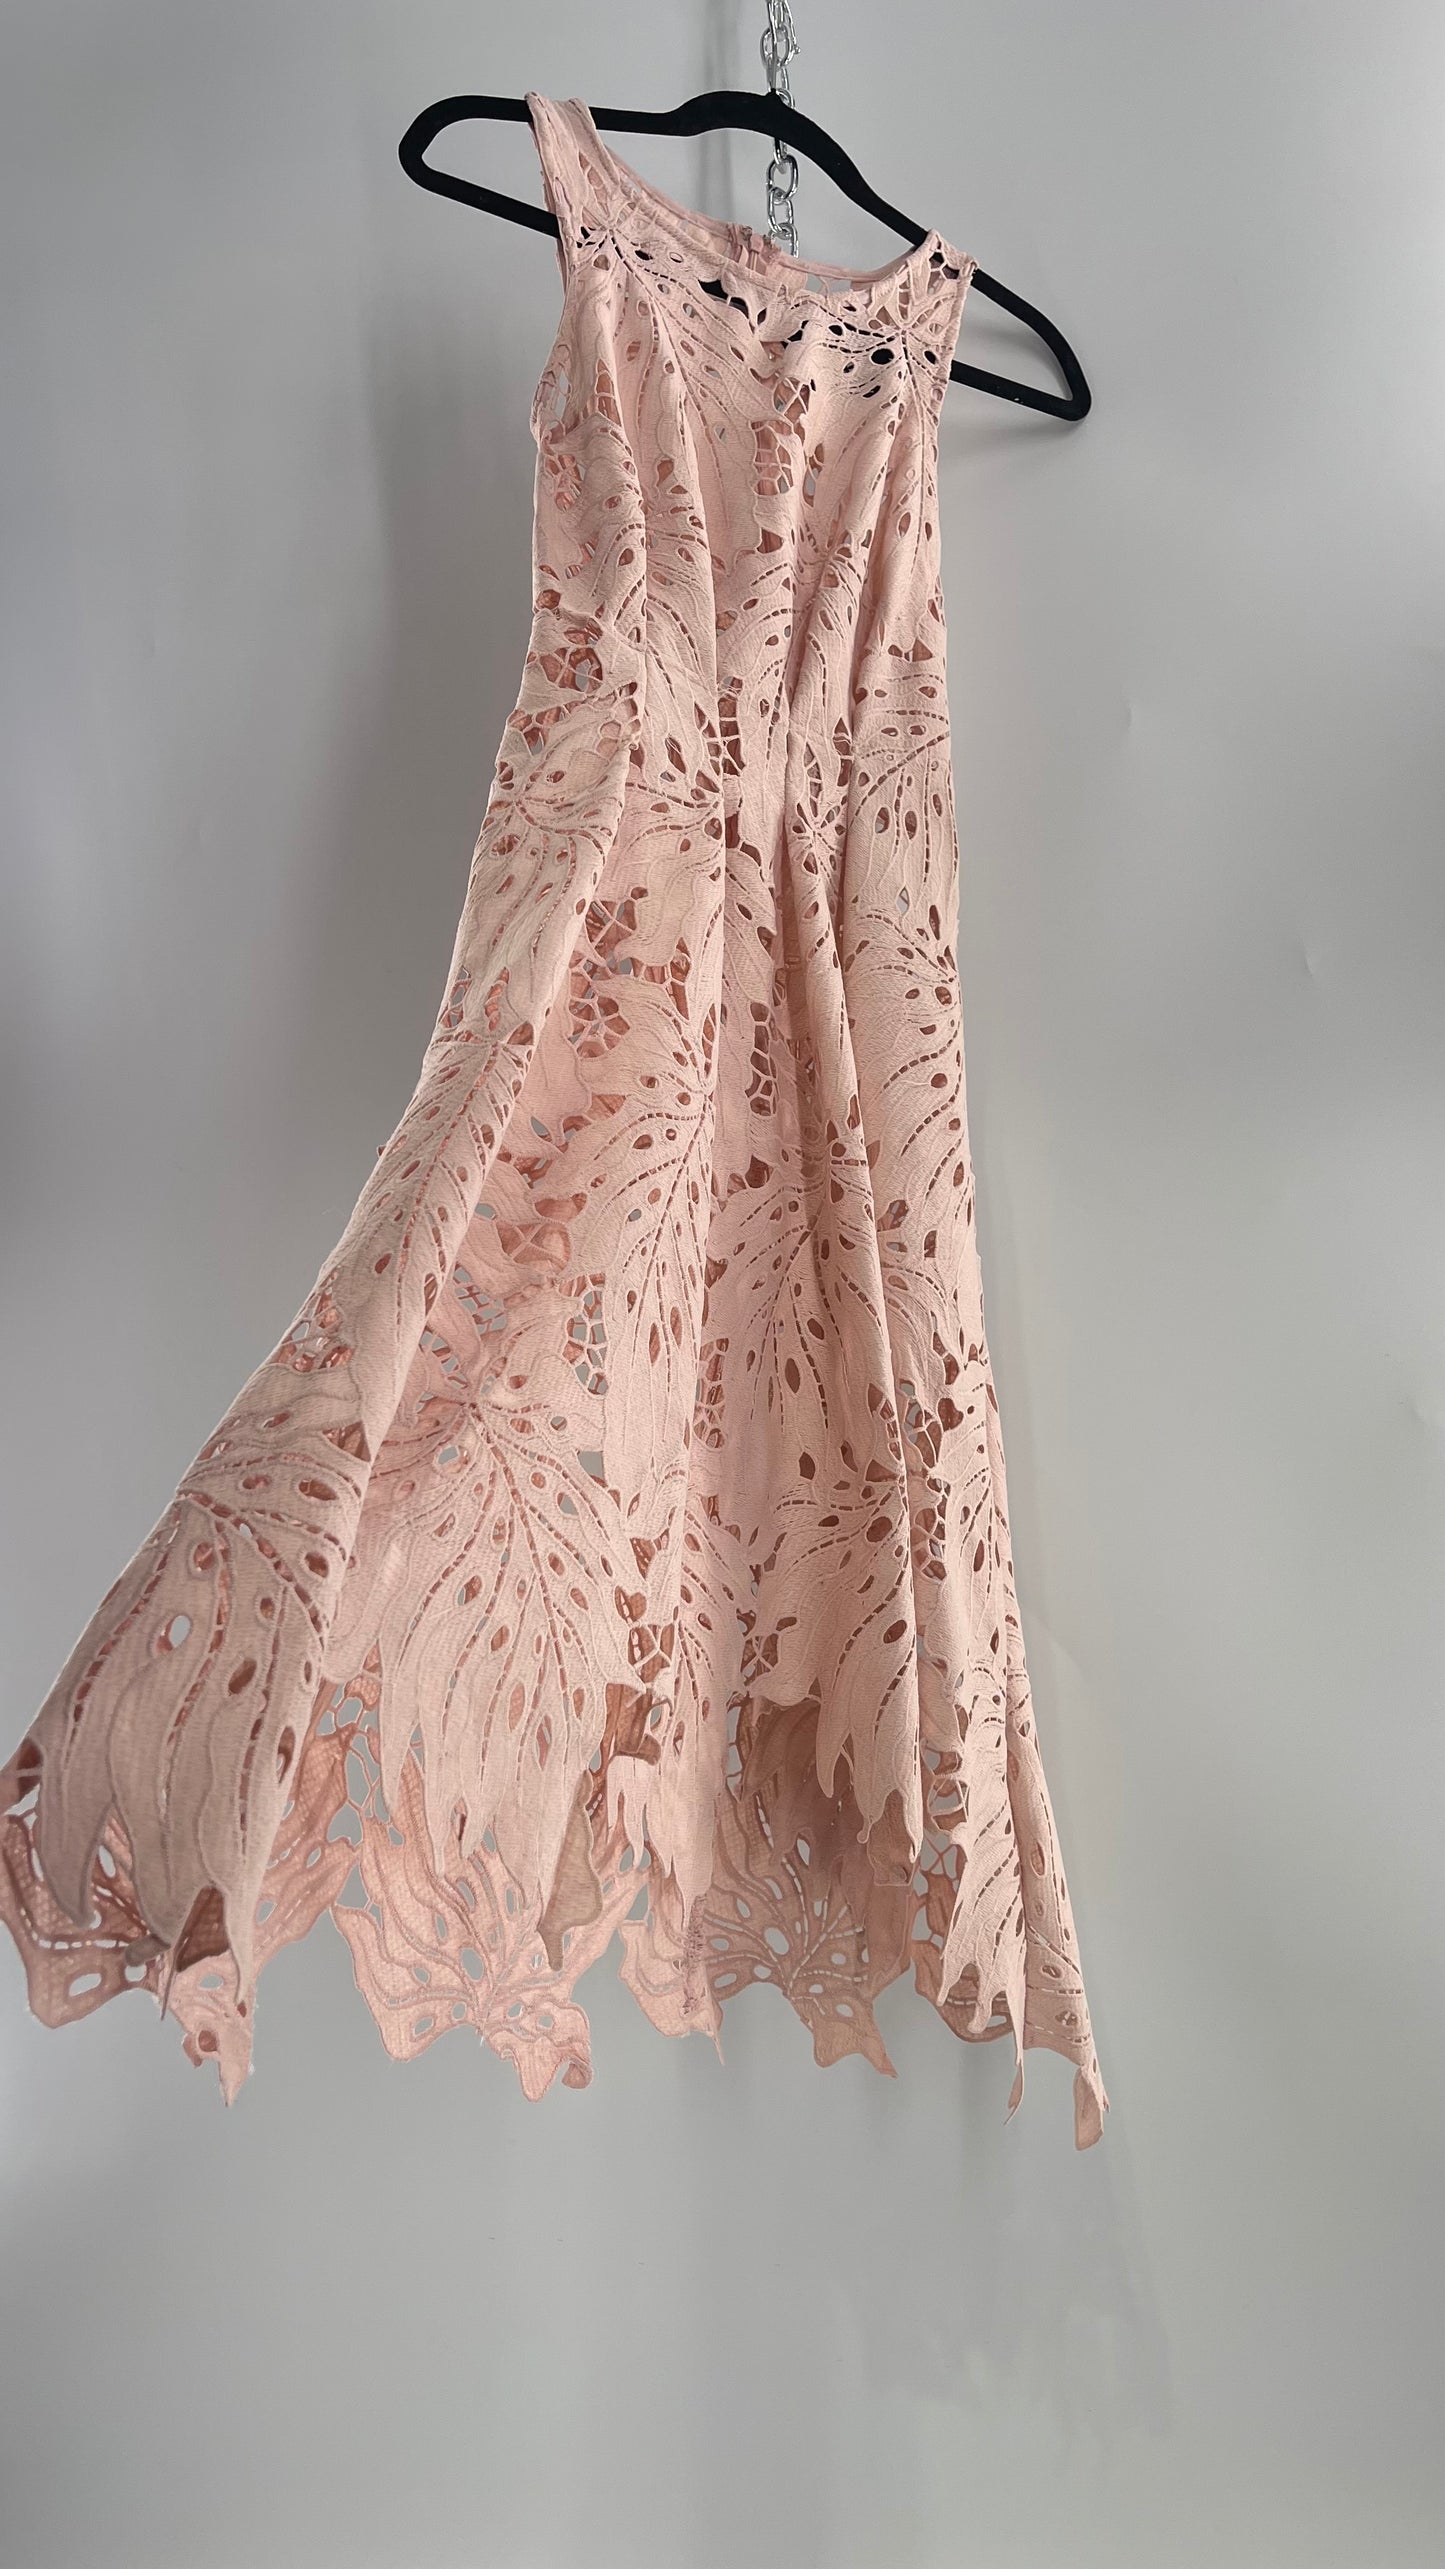 Anthropologie Eva Franco Baby Pink Completely Laser Cut Lace Palm Leaf Knee High Dress (2)